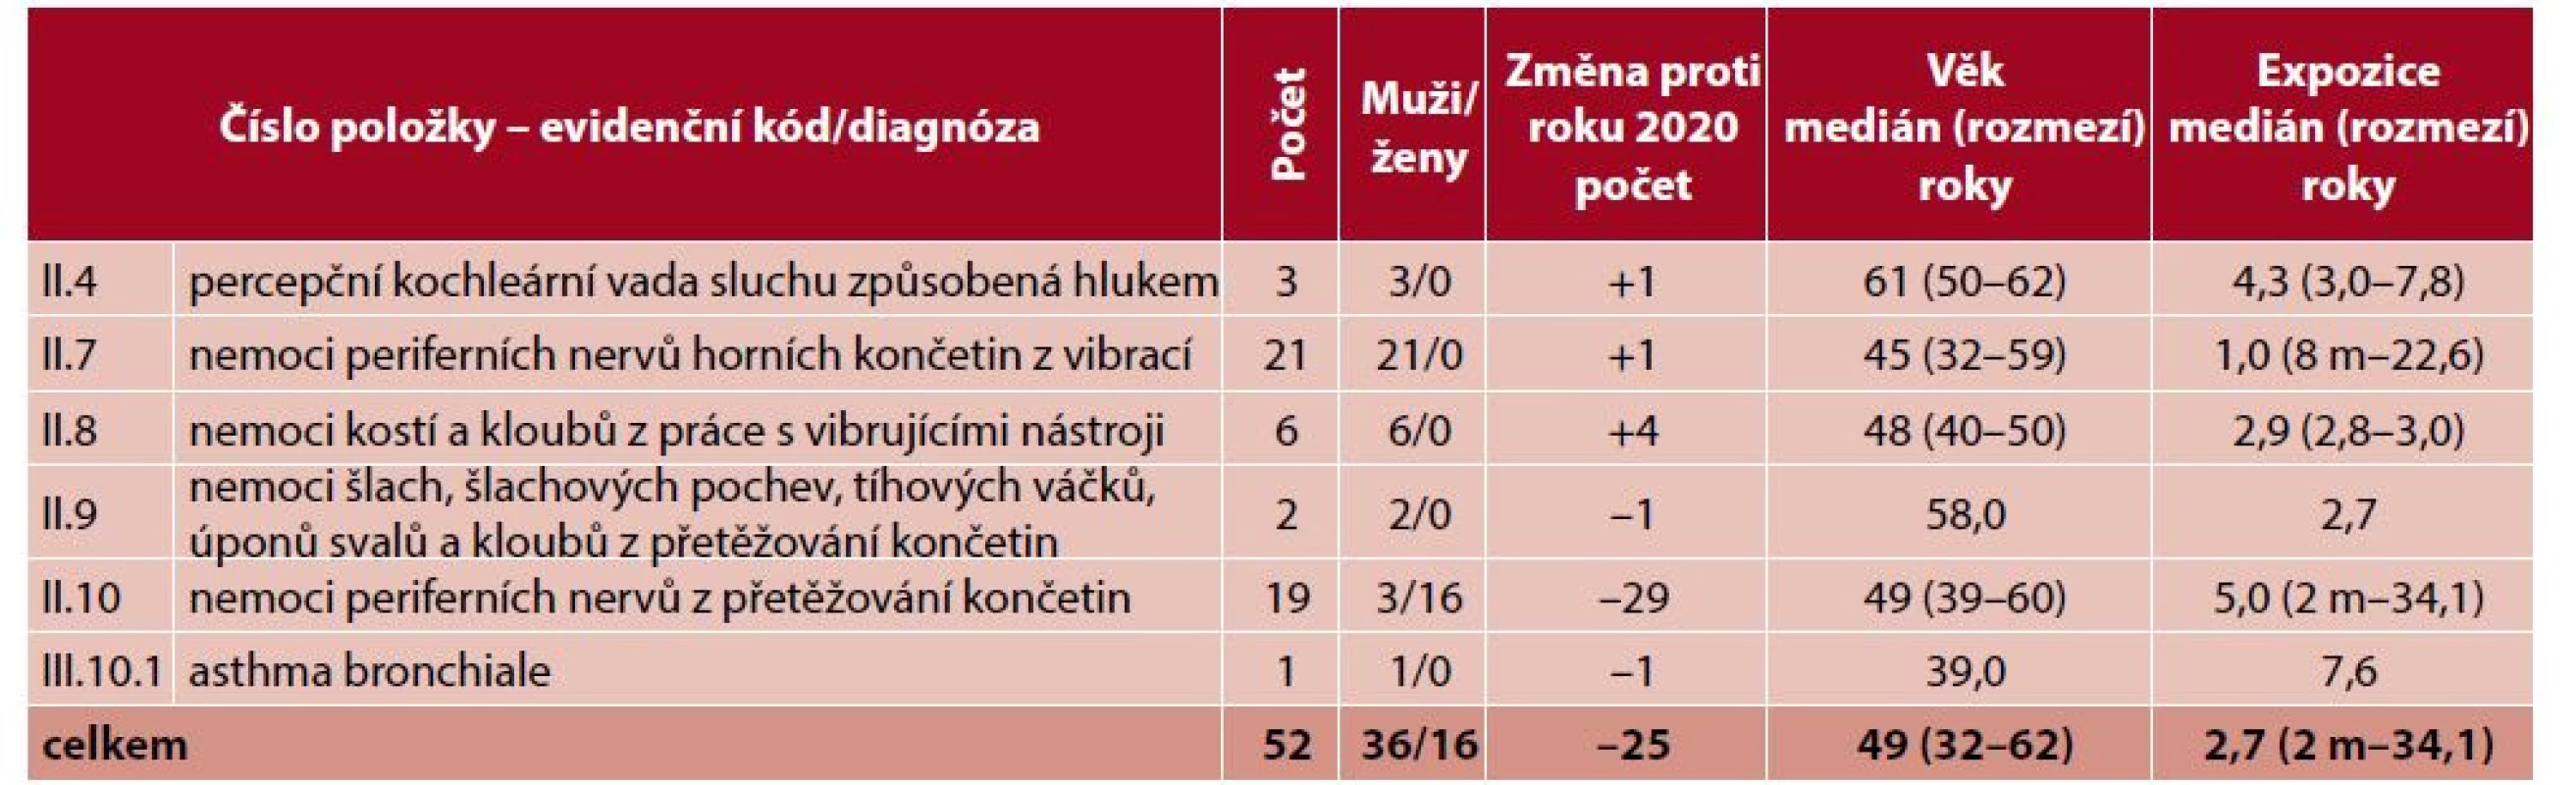 Ohrožení nemocí z povolání hlášená v České republice v roce 2021